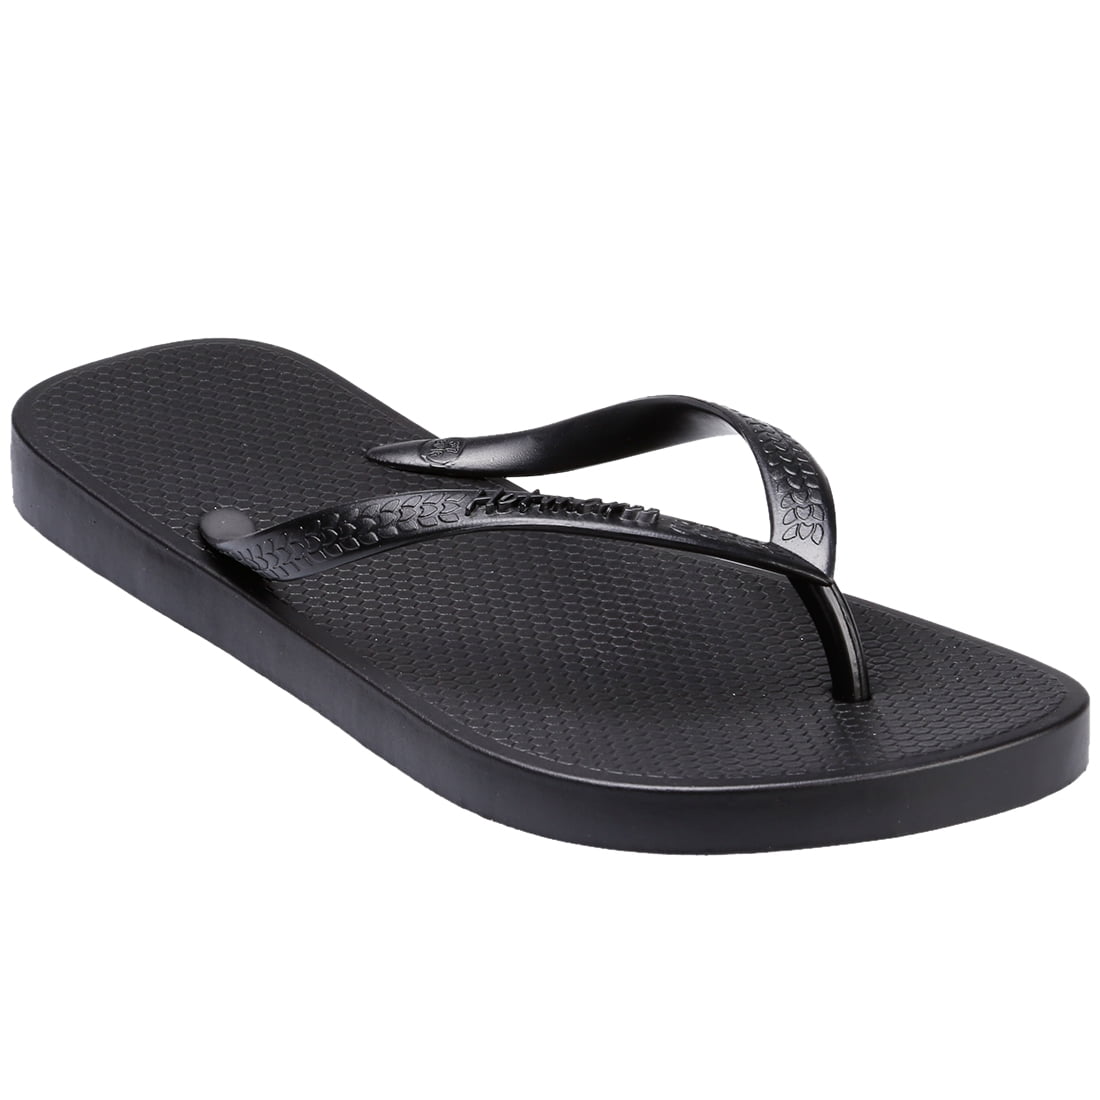 HOTMARZZ - HOTMARZZ DE76 Women's Flip Flops Slim Sandal Thong Flat ...